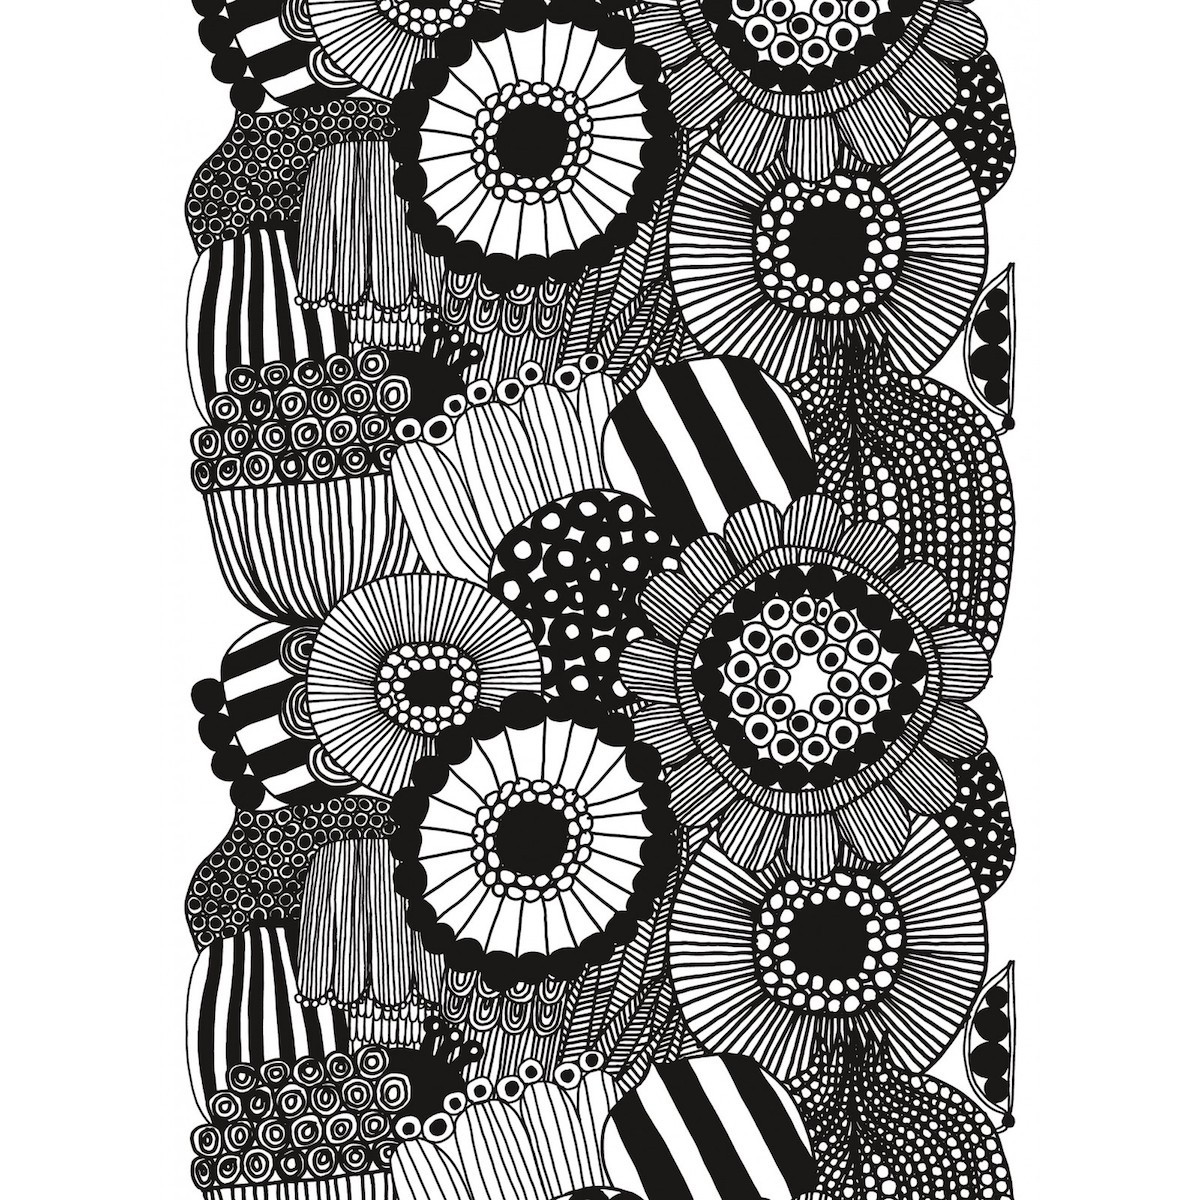 Siirtolapuutarha - white, black 190 - cotton - Marimekko fabric